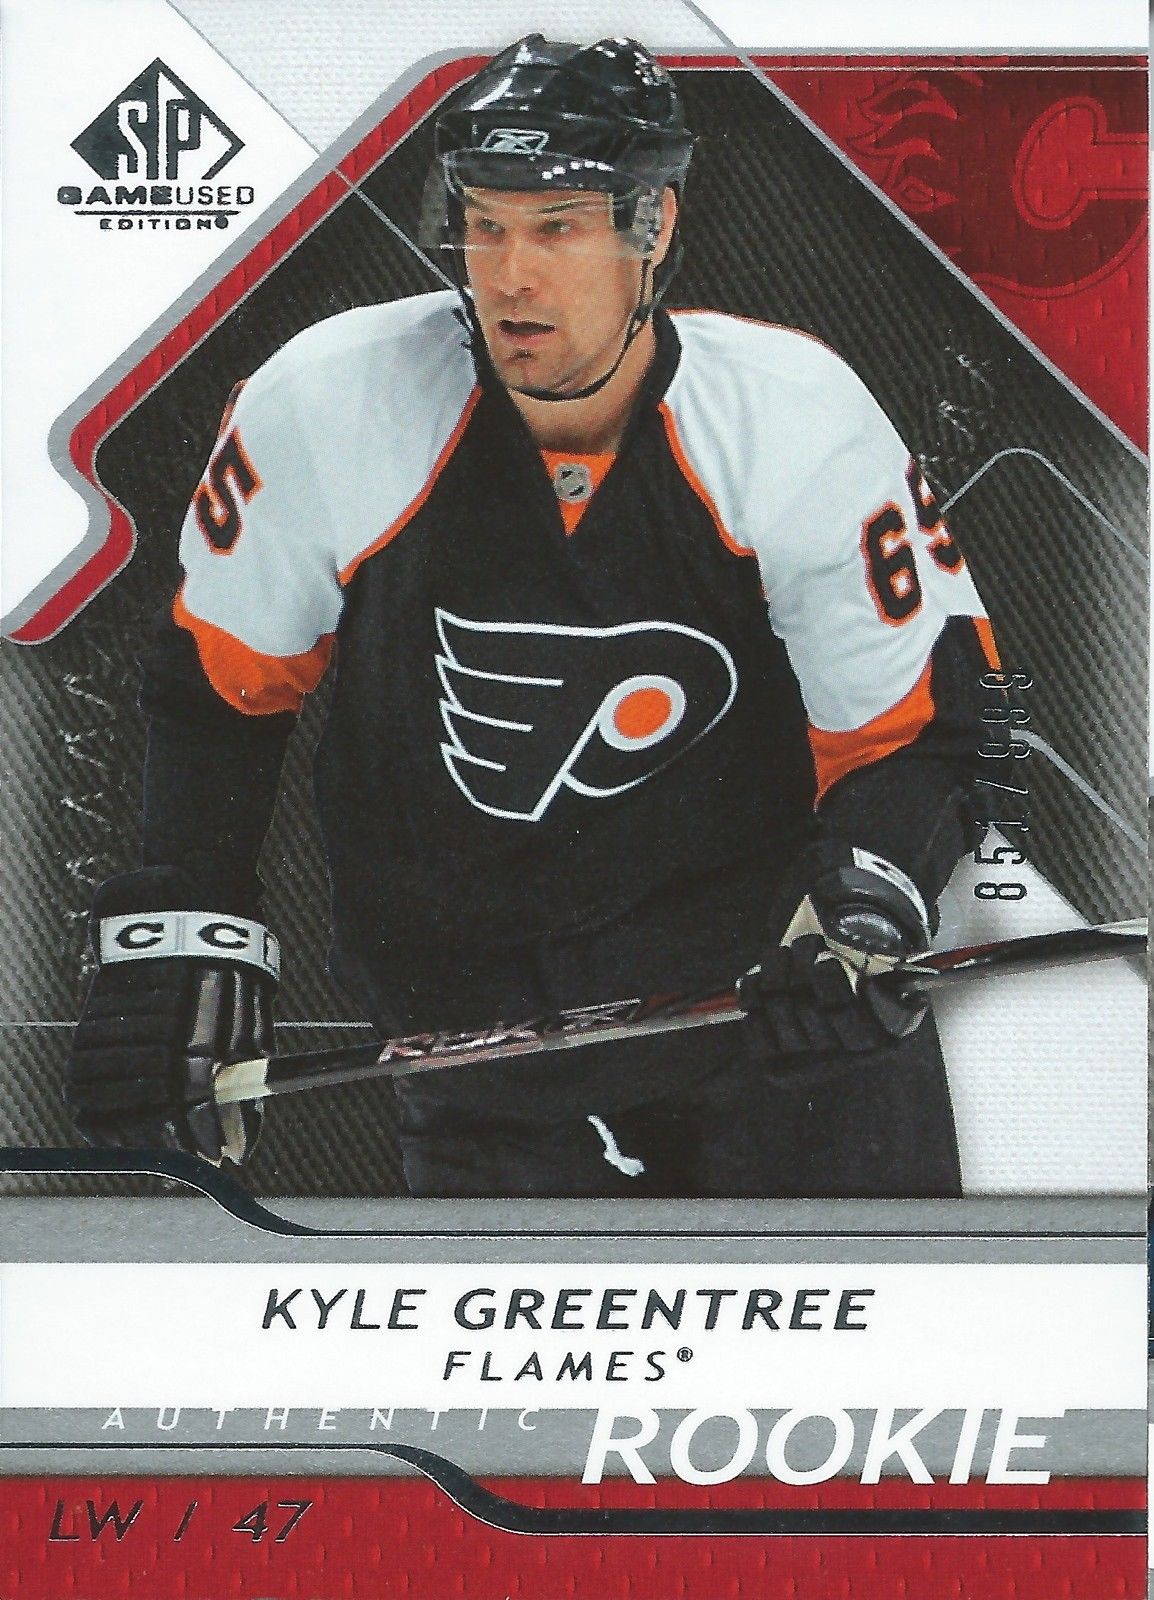  2008-09 SP Game Used KYLE GREENTREE Rookie /999 Upper Deck RC NHL 00991  Image 1